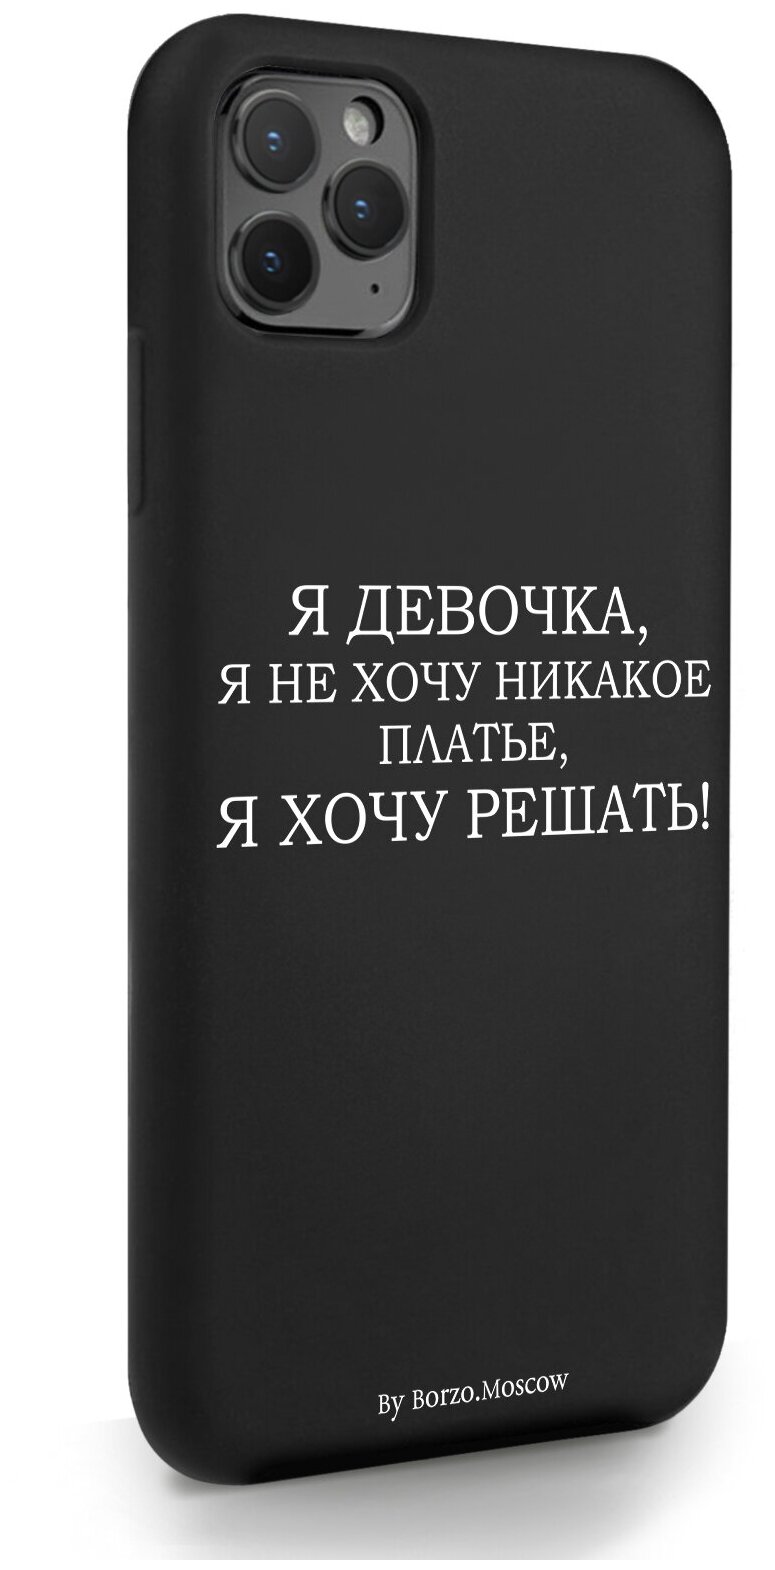 Черный силиконовый чехол Borzo.Moscow для iPhone 11 Pro Max Я девочка, я хочу решать для Айфон 11 Про Макс